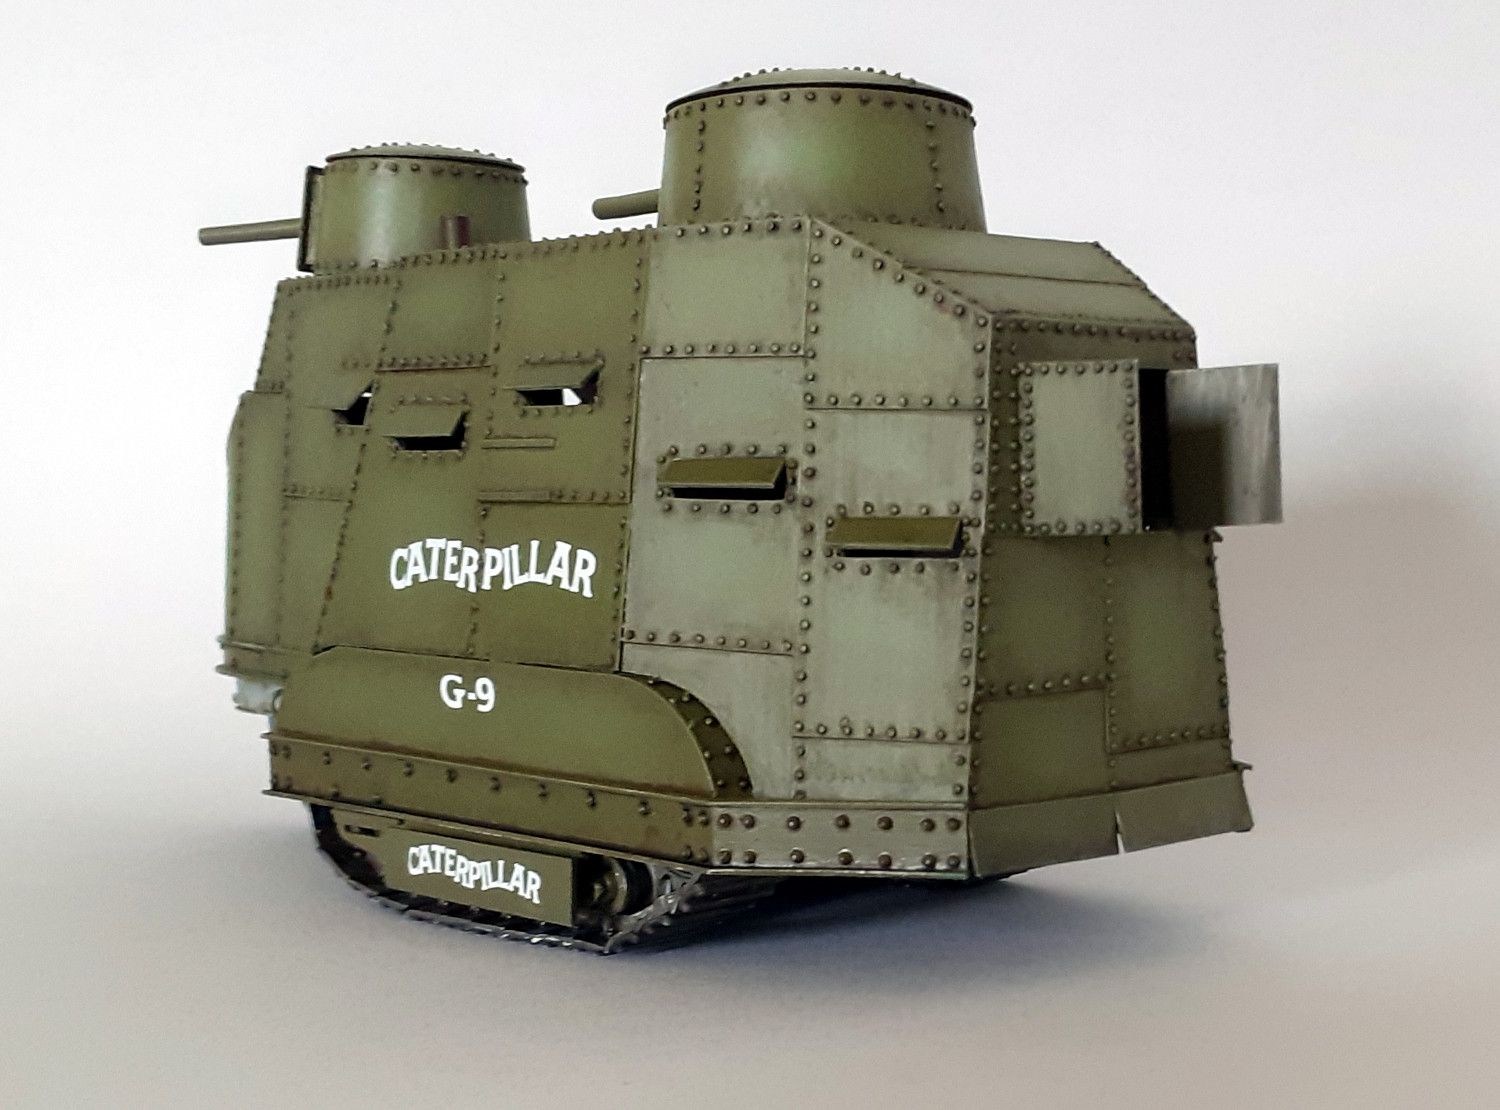 Caterpillar G9 : 1er tank US de l'Histoire [base tracteur Holt Roden + scratch] de Lostiznaos 663e8c4134545